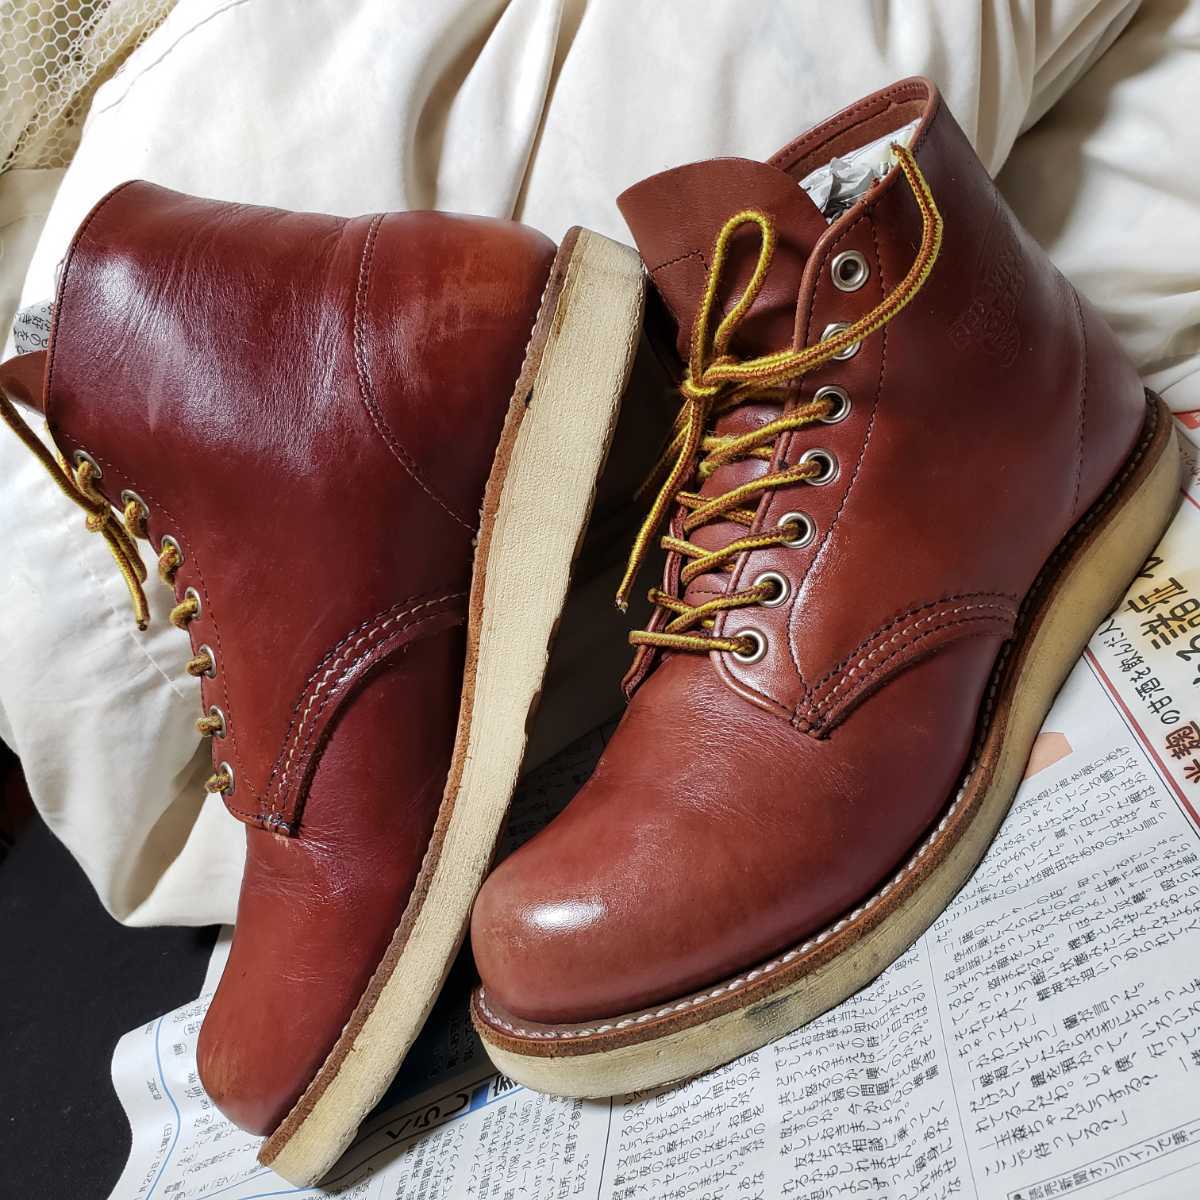 REDWING レッドウィング 9105 アイリッシュセッター 赤茶 IRISHSETTER ブーツ BOOTS 米国製 7.5D 皮革 25.5cm  レザー leatherシューズshoes